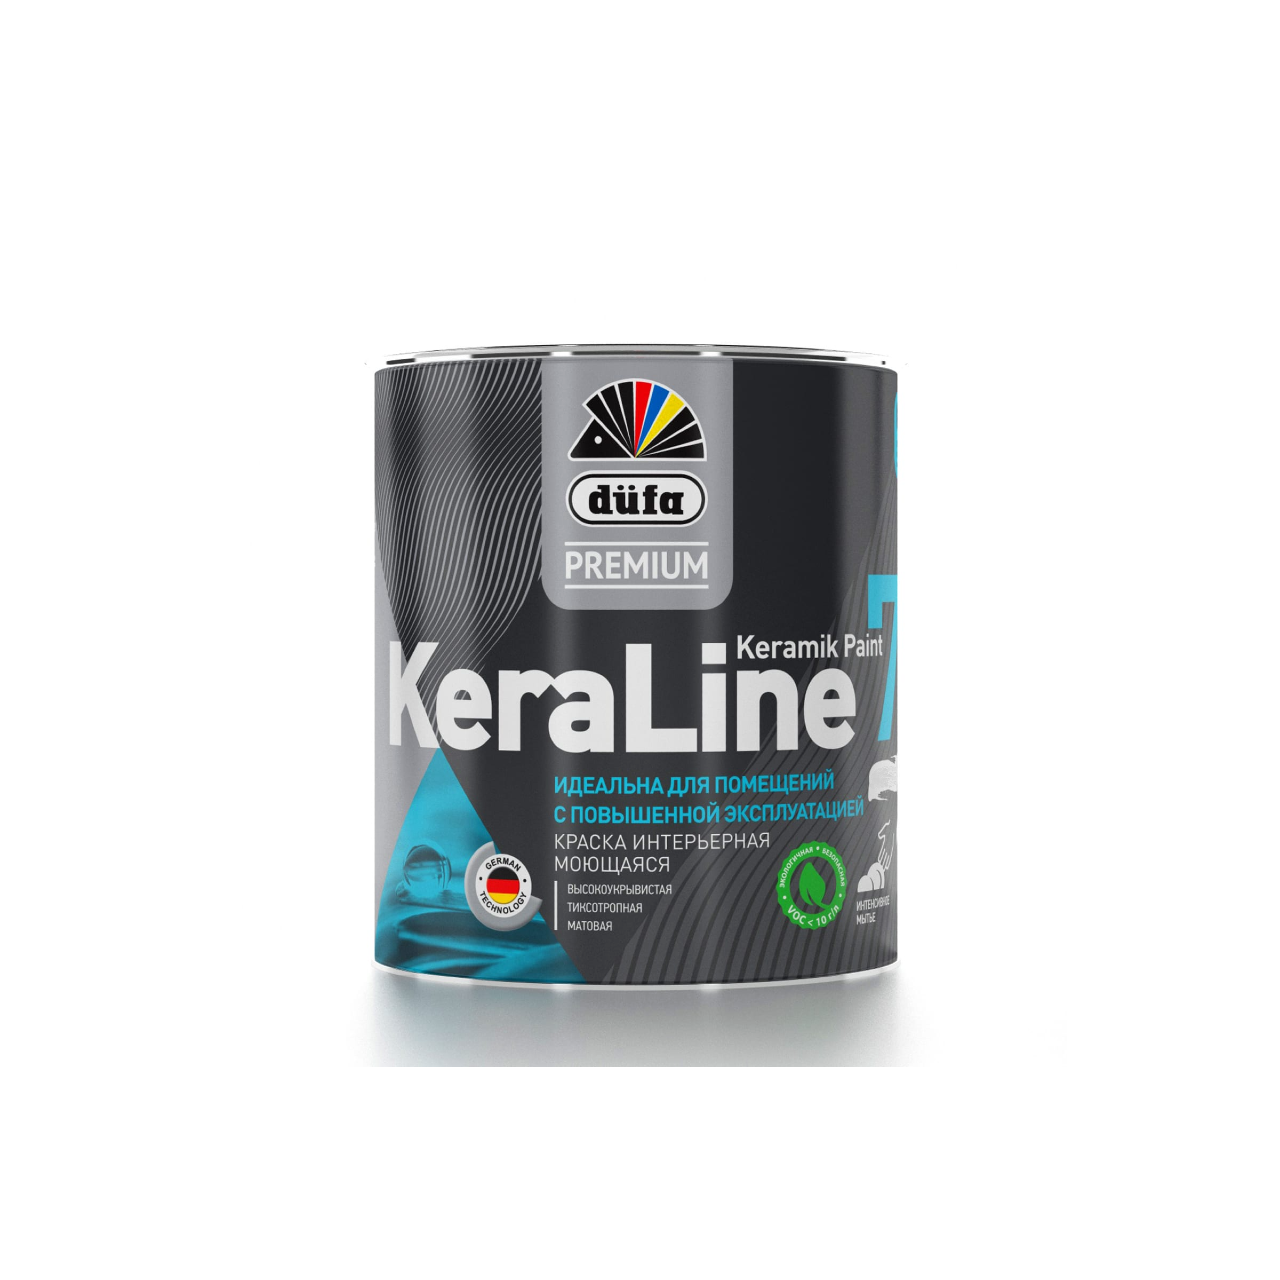 90190607 Краска для стен и потолков моющаяся Premium KeraLine Keramik Paint 7 матовая прозрачная база 3 0.9 л STLM-0126759 DUFA